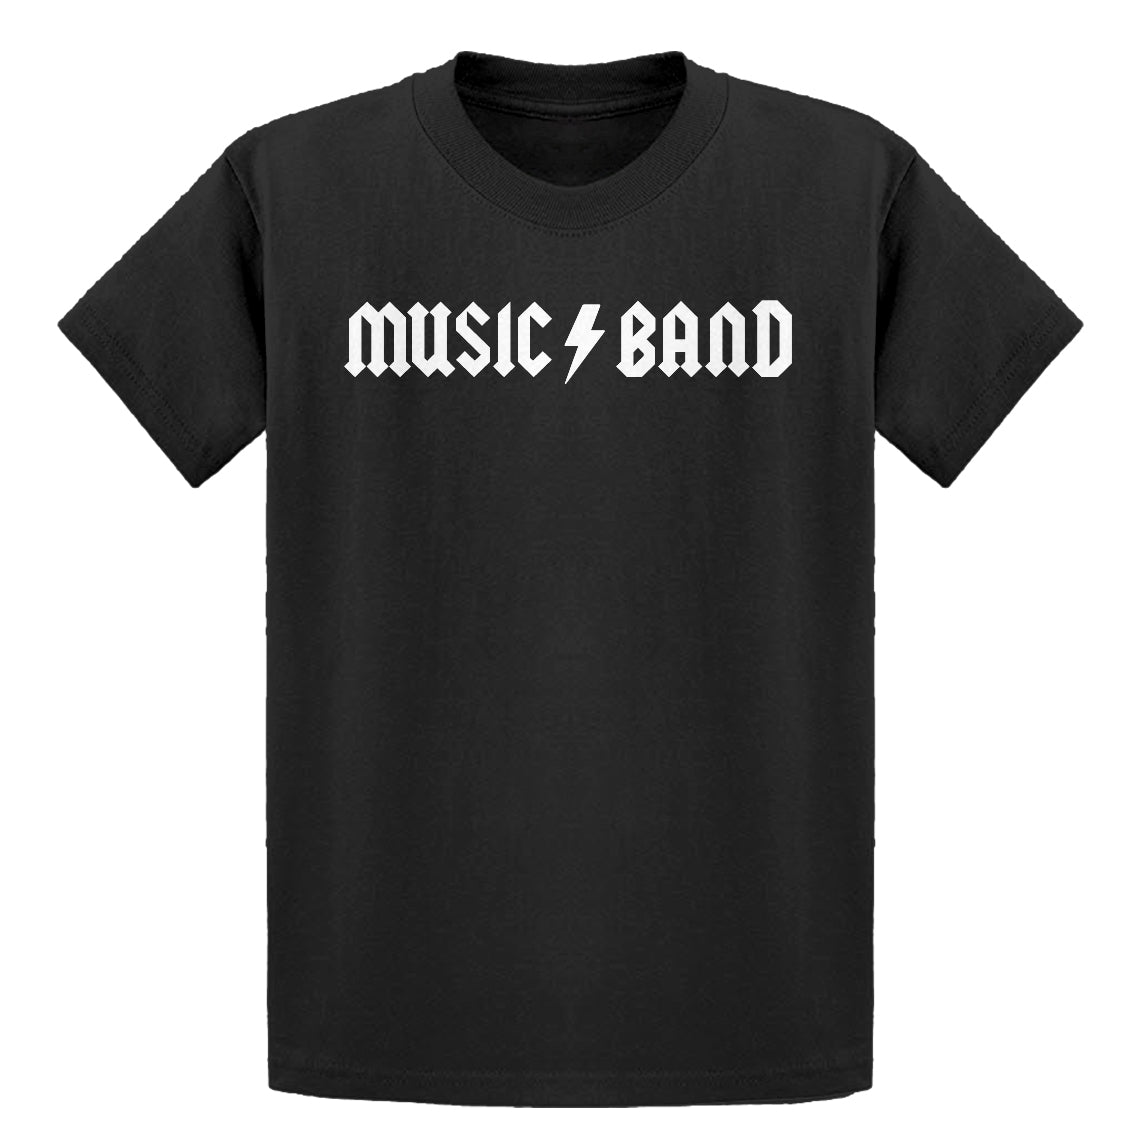 Youth Music Band Kids T-shirt